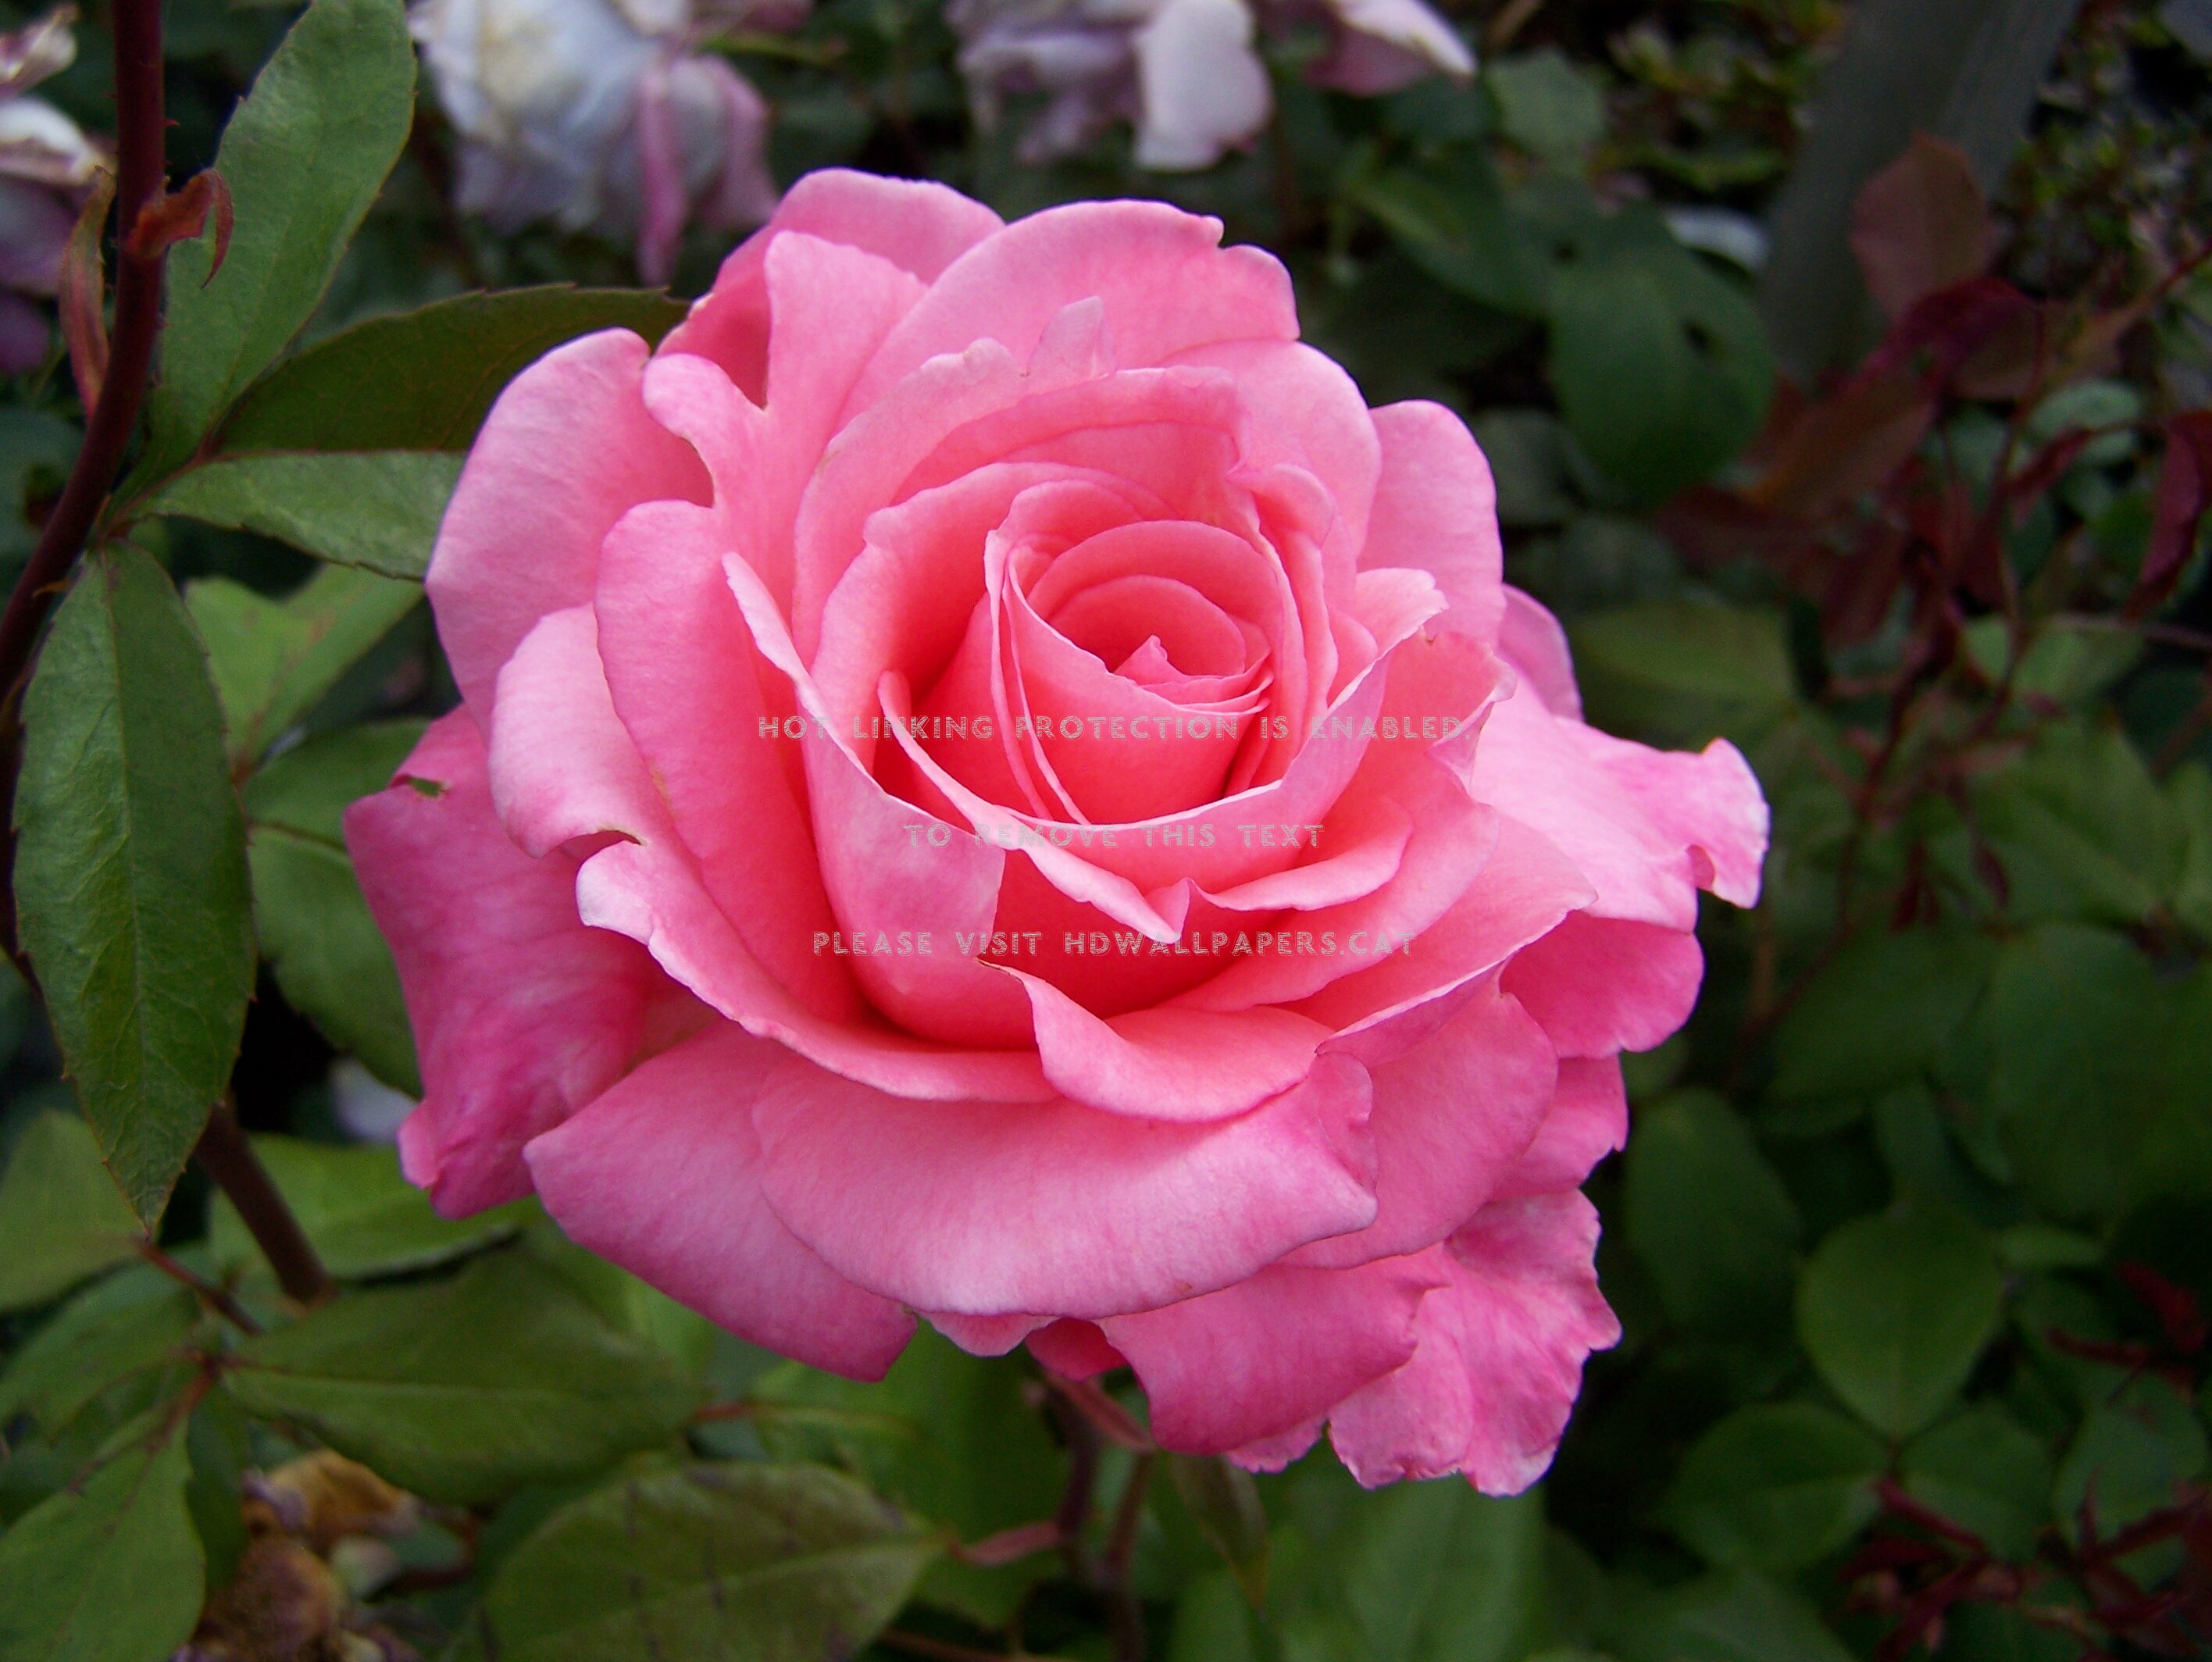 große rosentapete,blume,blühende pflanze,julia kind stand auf,gartenrosen,rosa